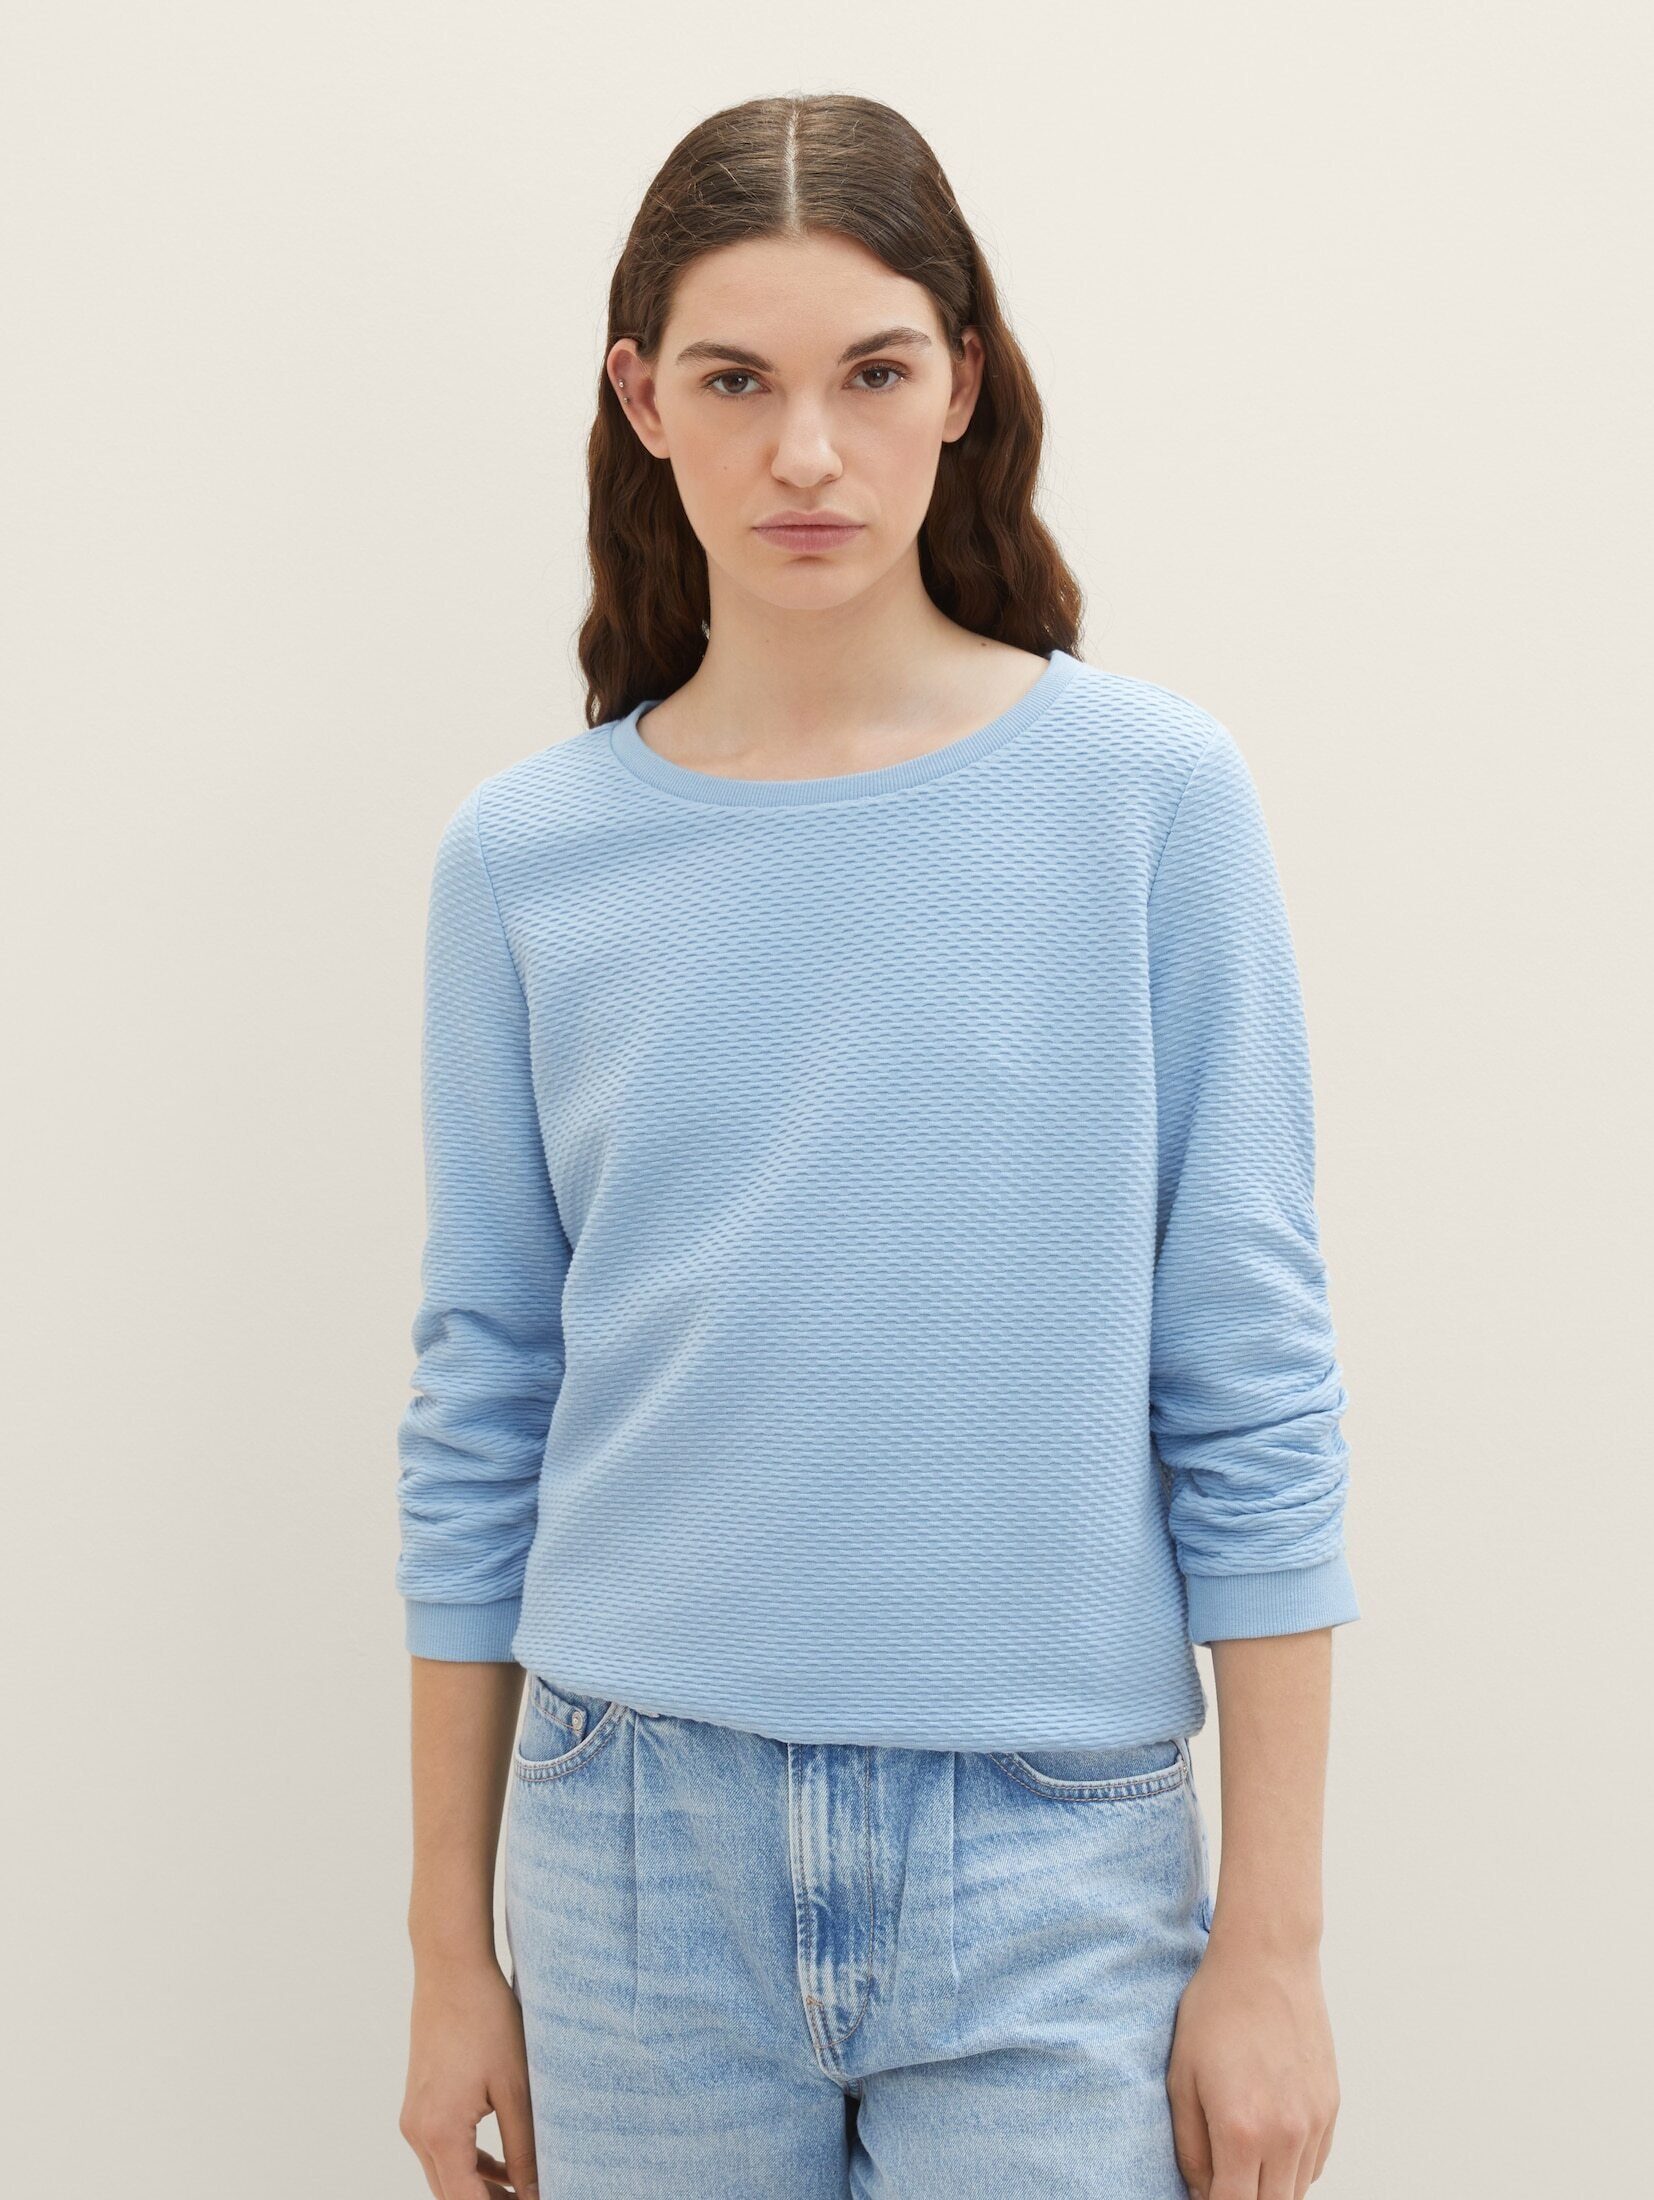 TOM TAILOR Denim Sweatshirt Strukturiertes Sweatshirt Soft Charming Blue